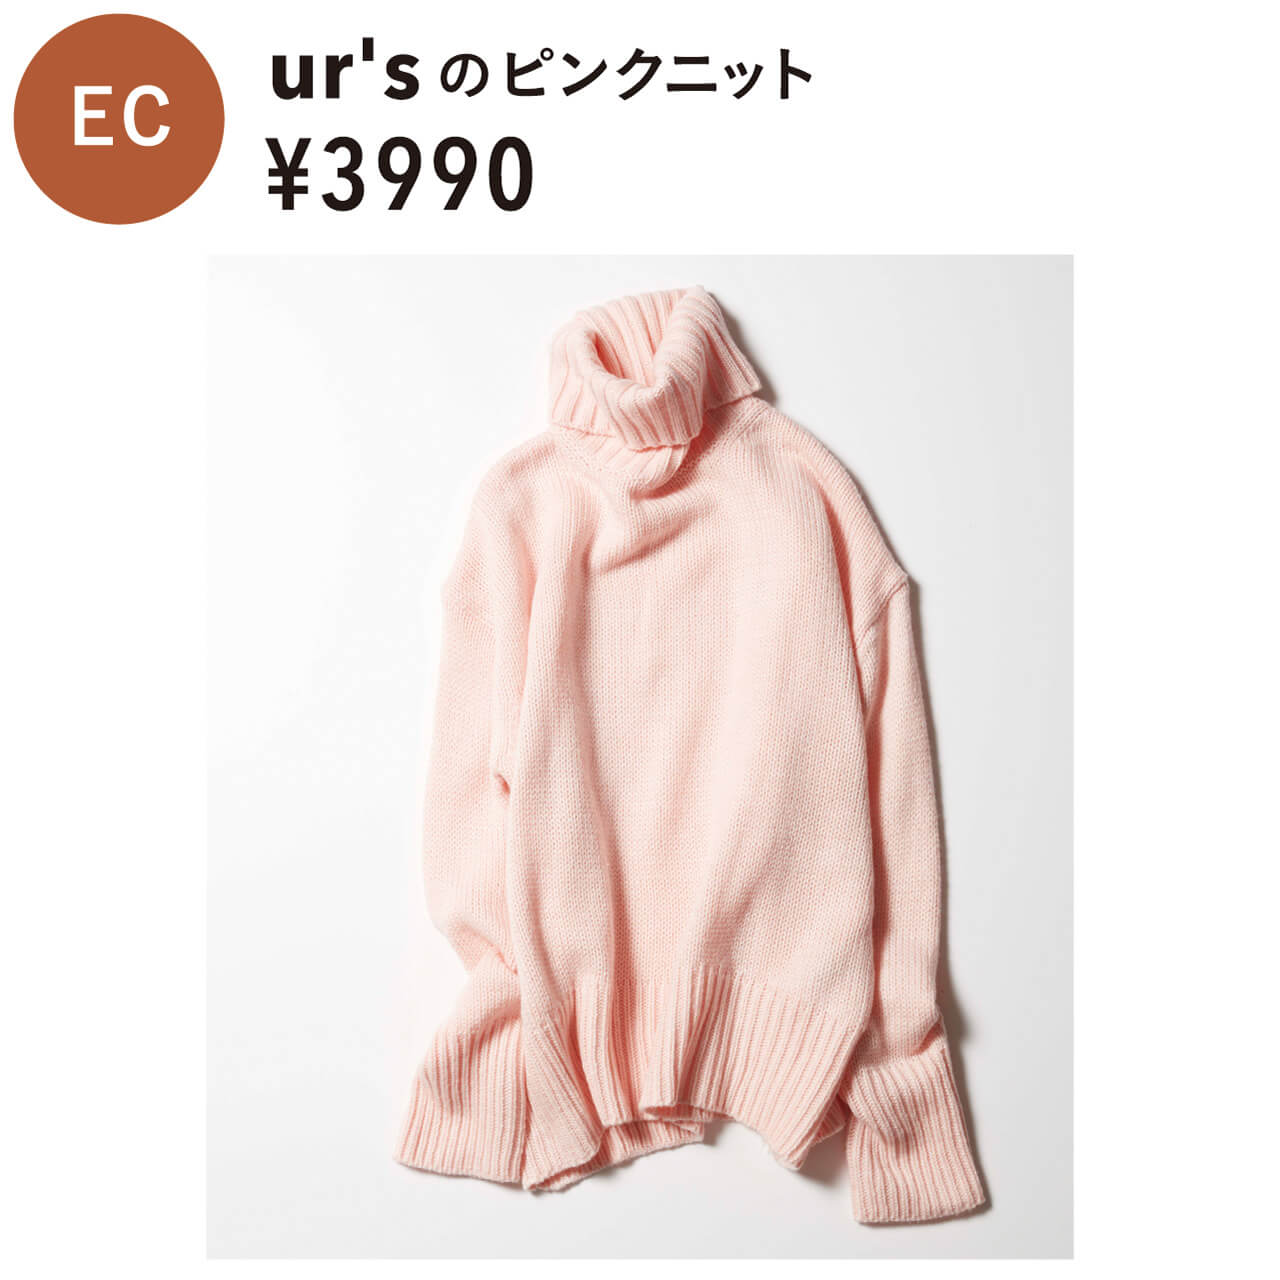 EC　ur'sのピンクニット　¥3990